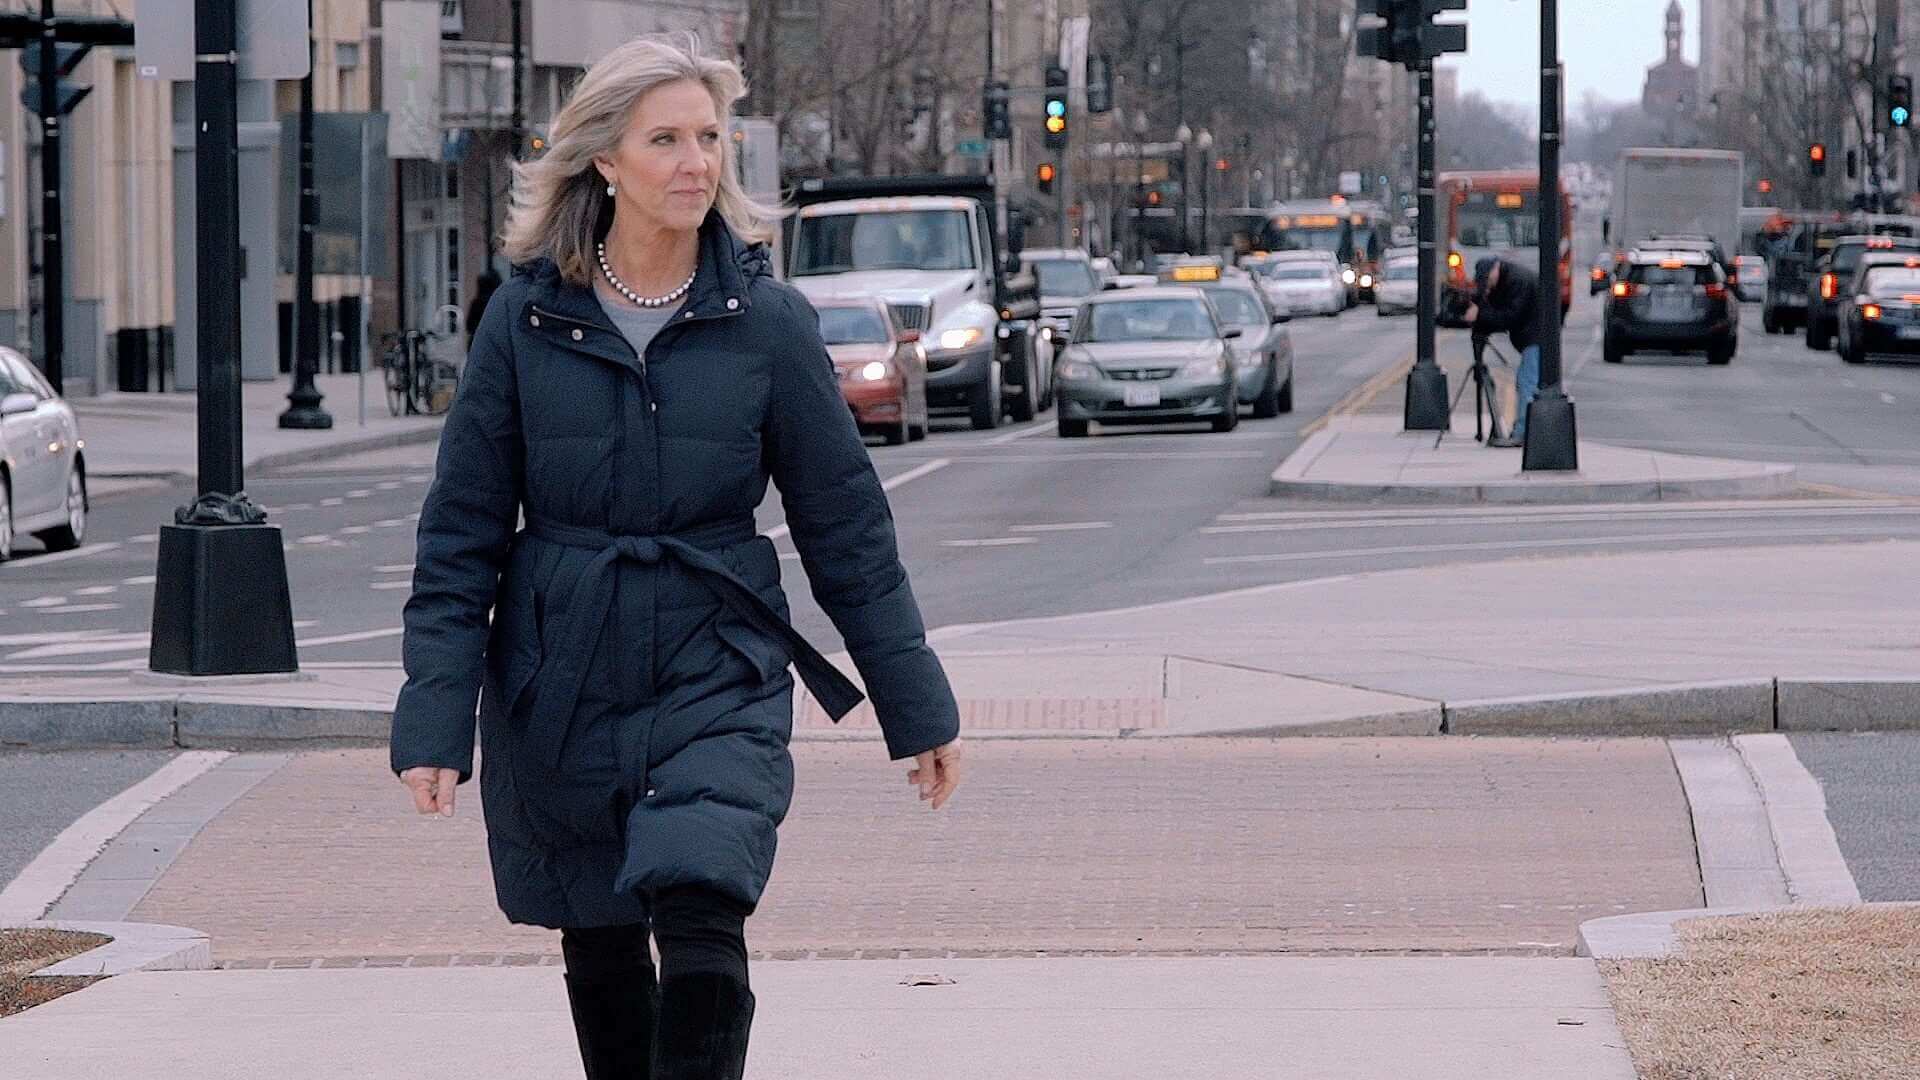 Woman walking alone in a city